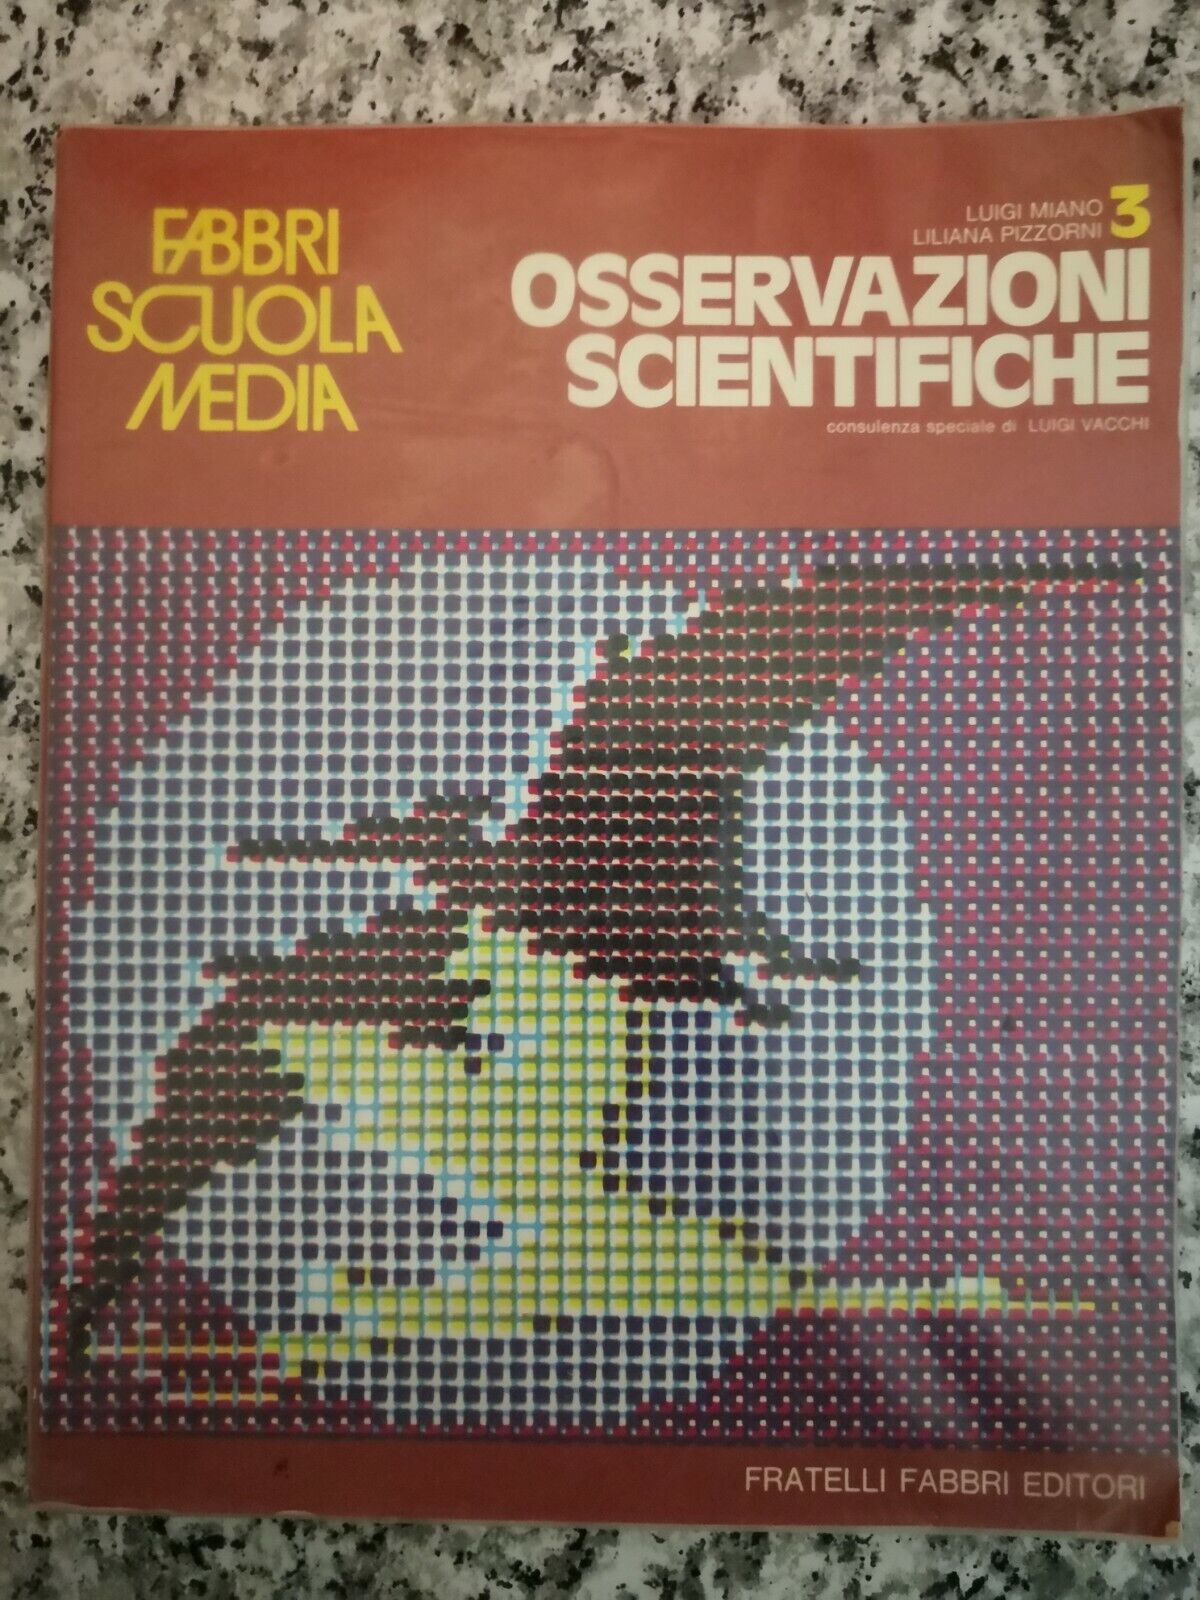 Osservazioni scientifiche Vol 3  di Luigi Miano Liliana Pizzorni,  1975,  -F